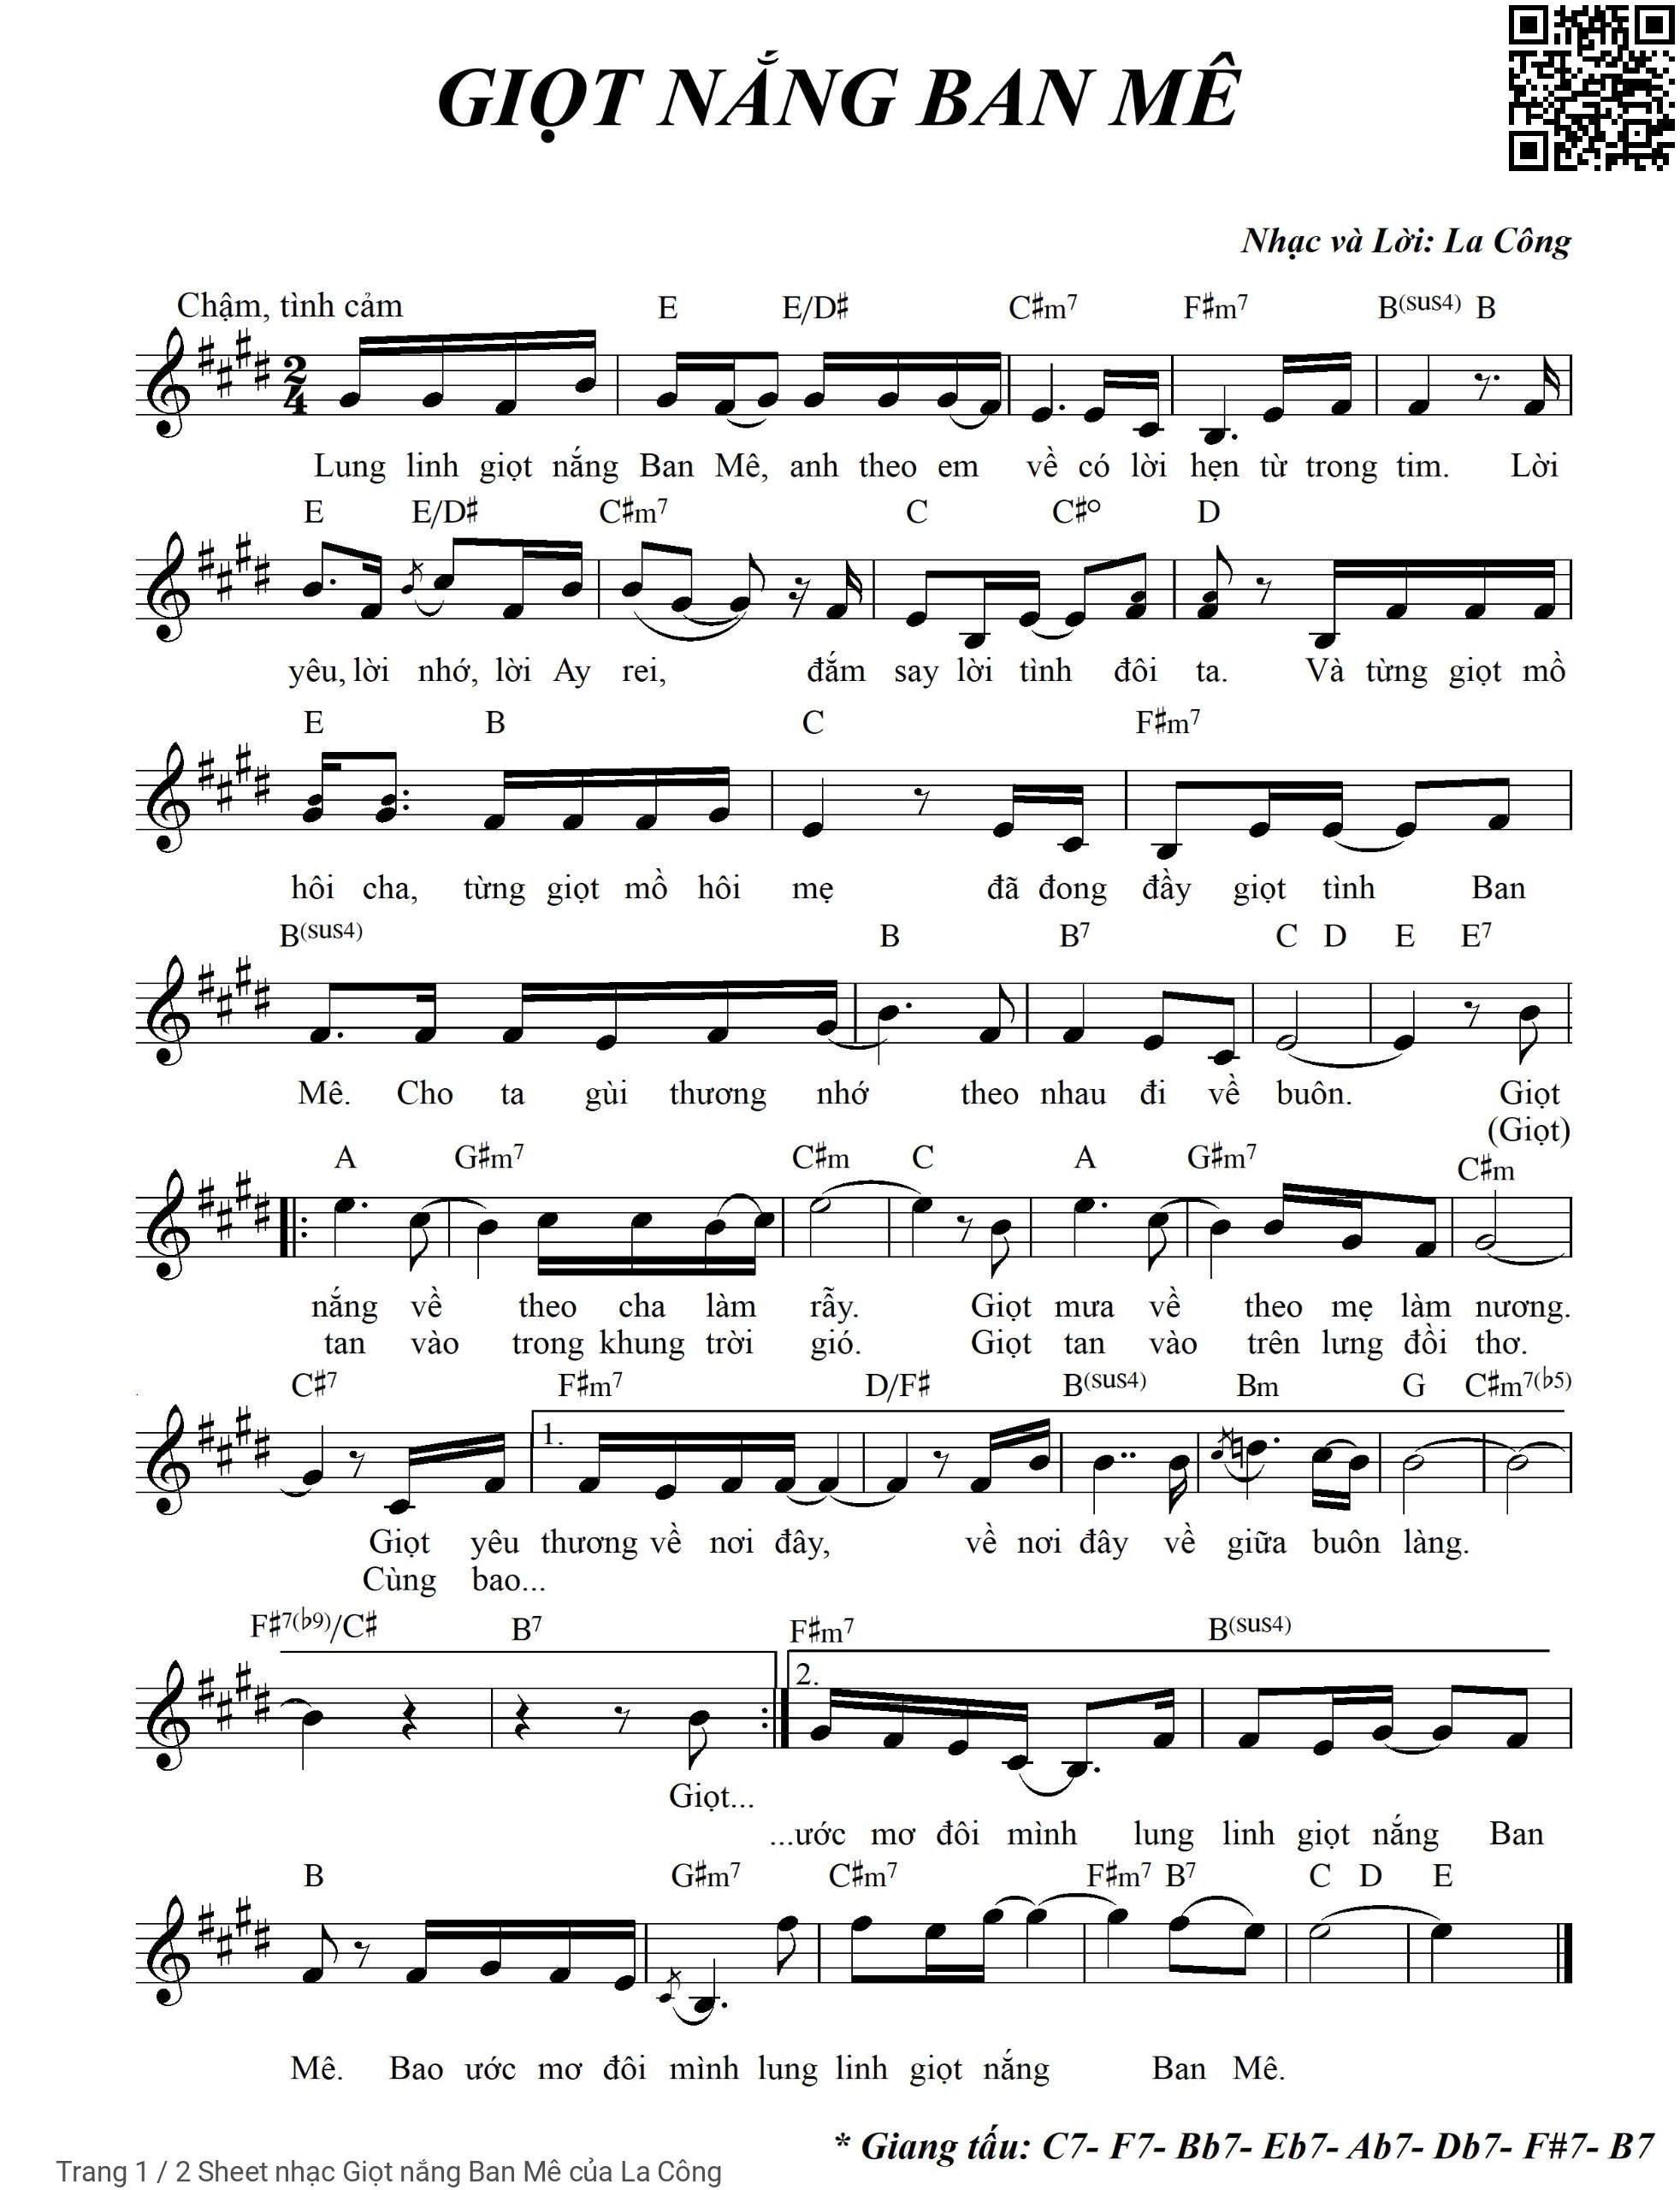 Trang 1 của Sheet nhạc PDF bài hát Giọt nắng Ban Mê - La Công